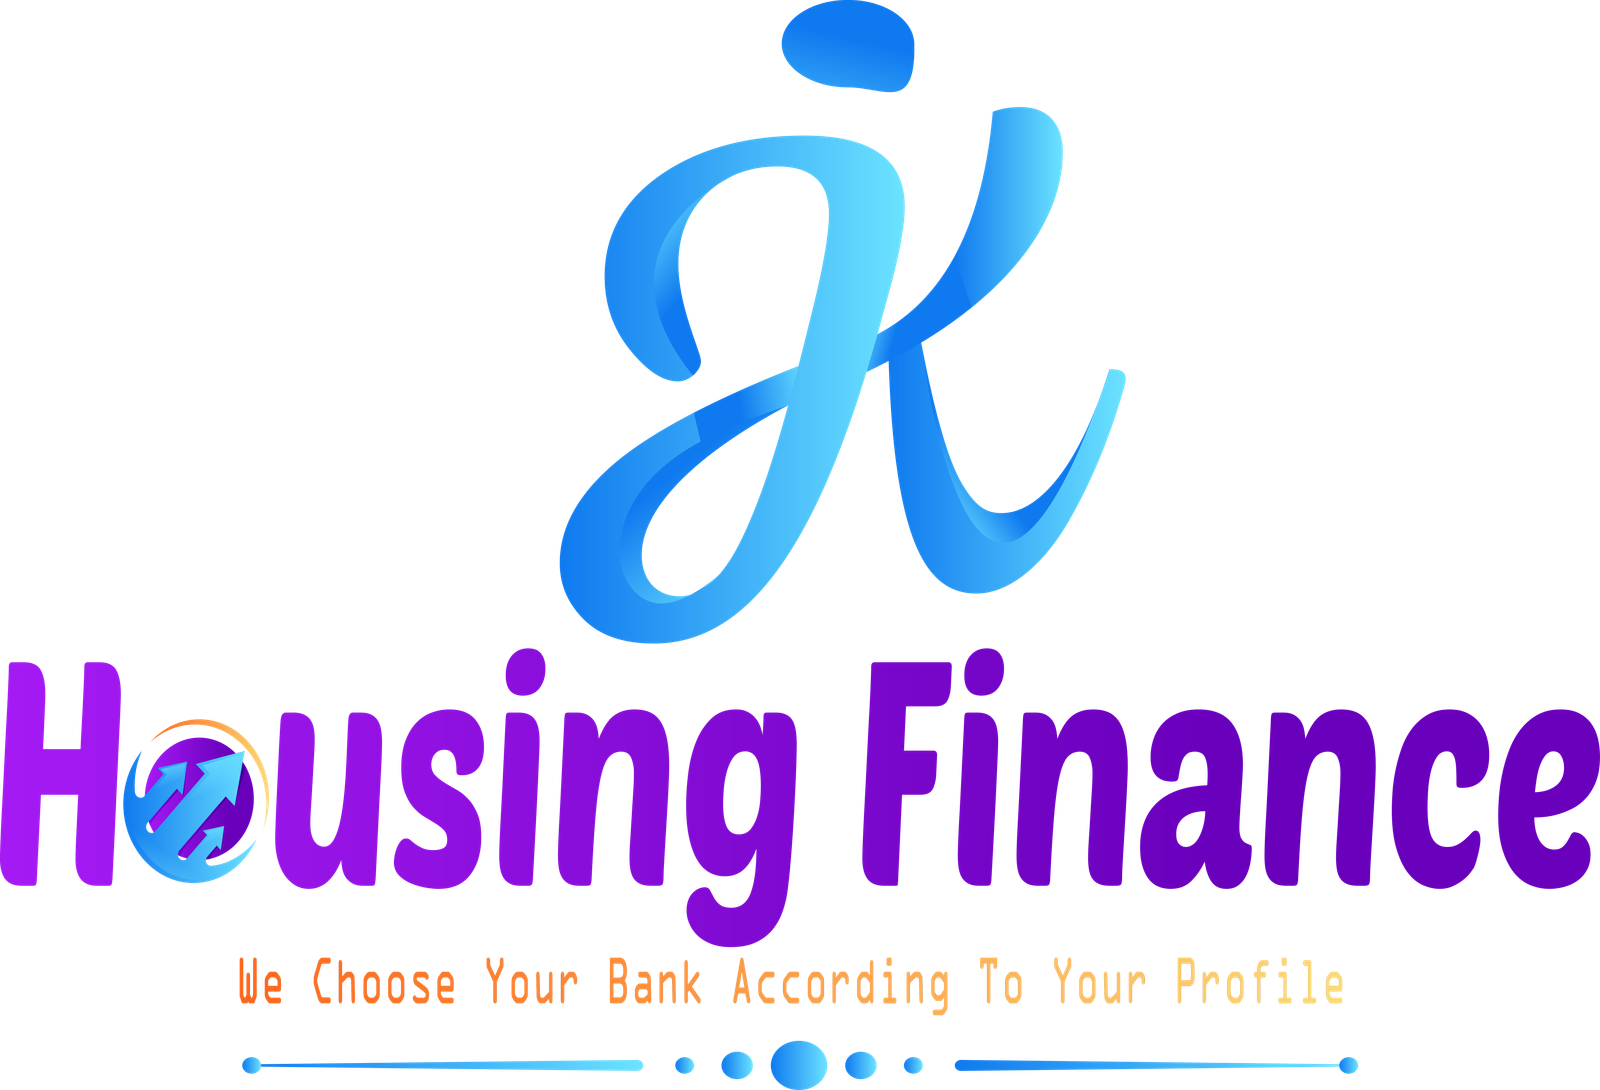 JK Housing Finance